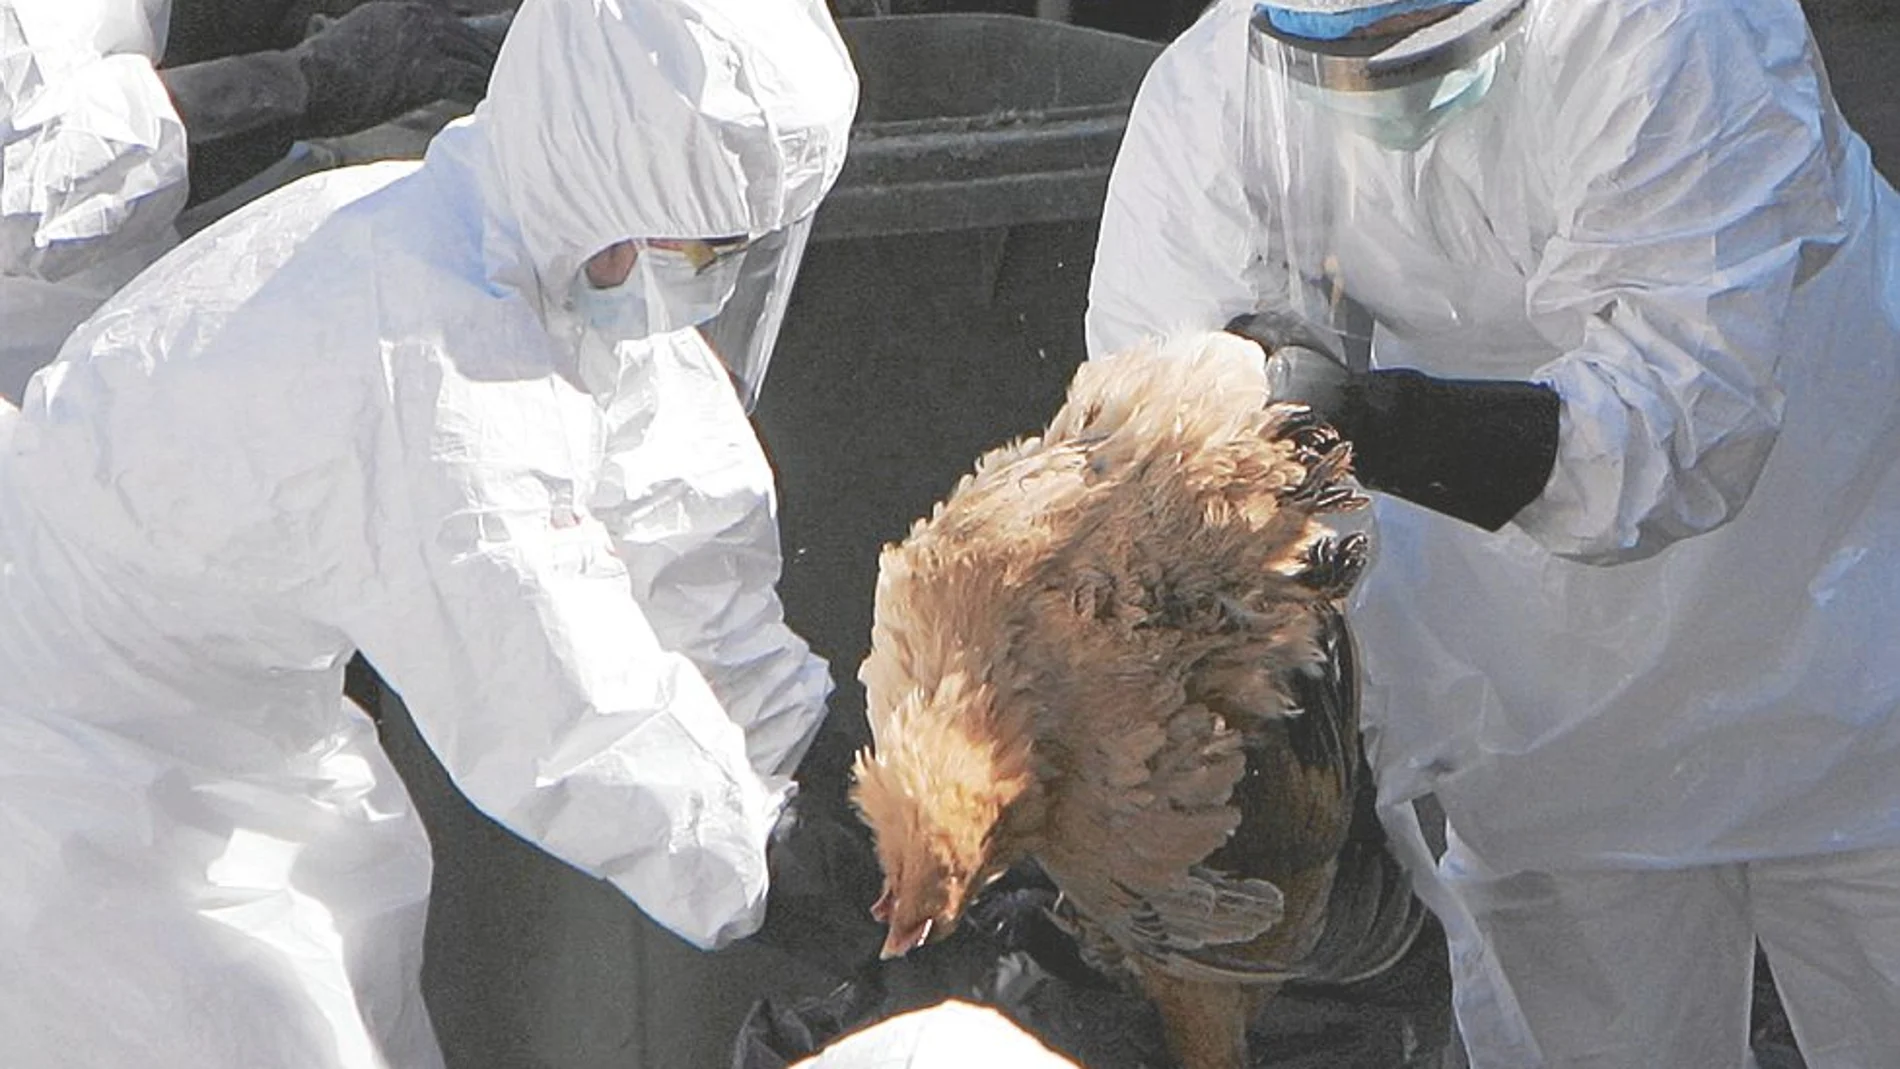 La OMS alerta a Europa ante el riesgo de gripe aviar en personas